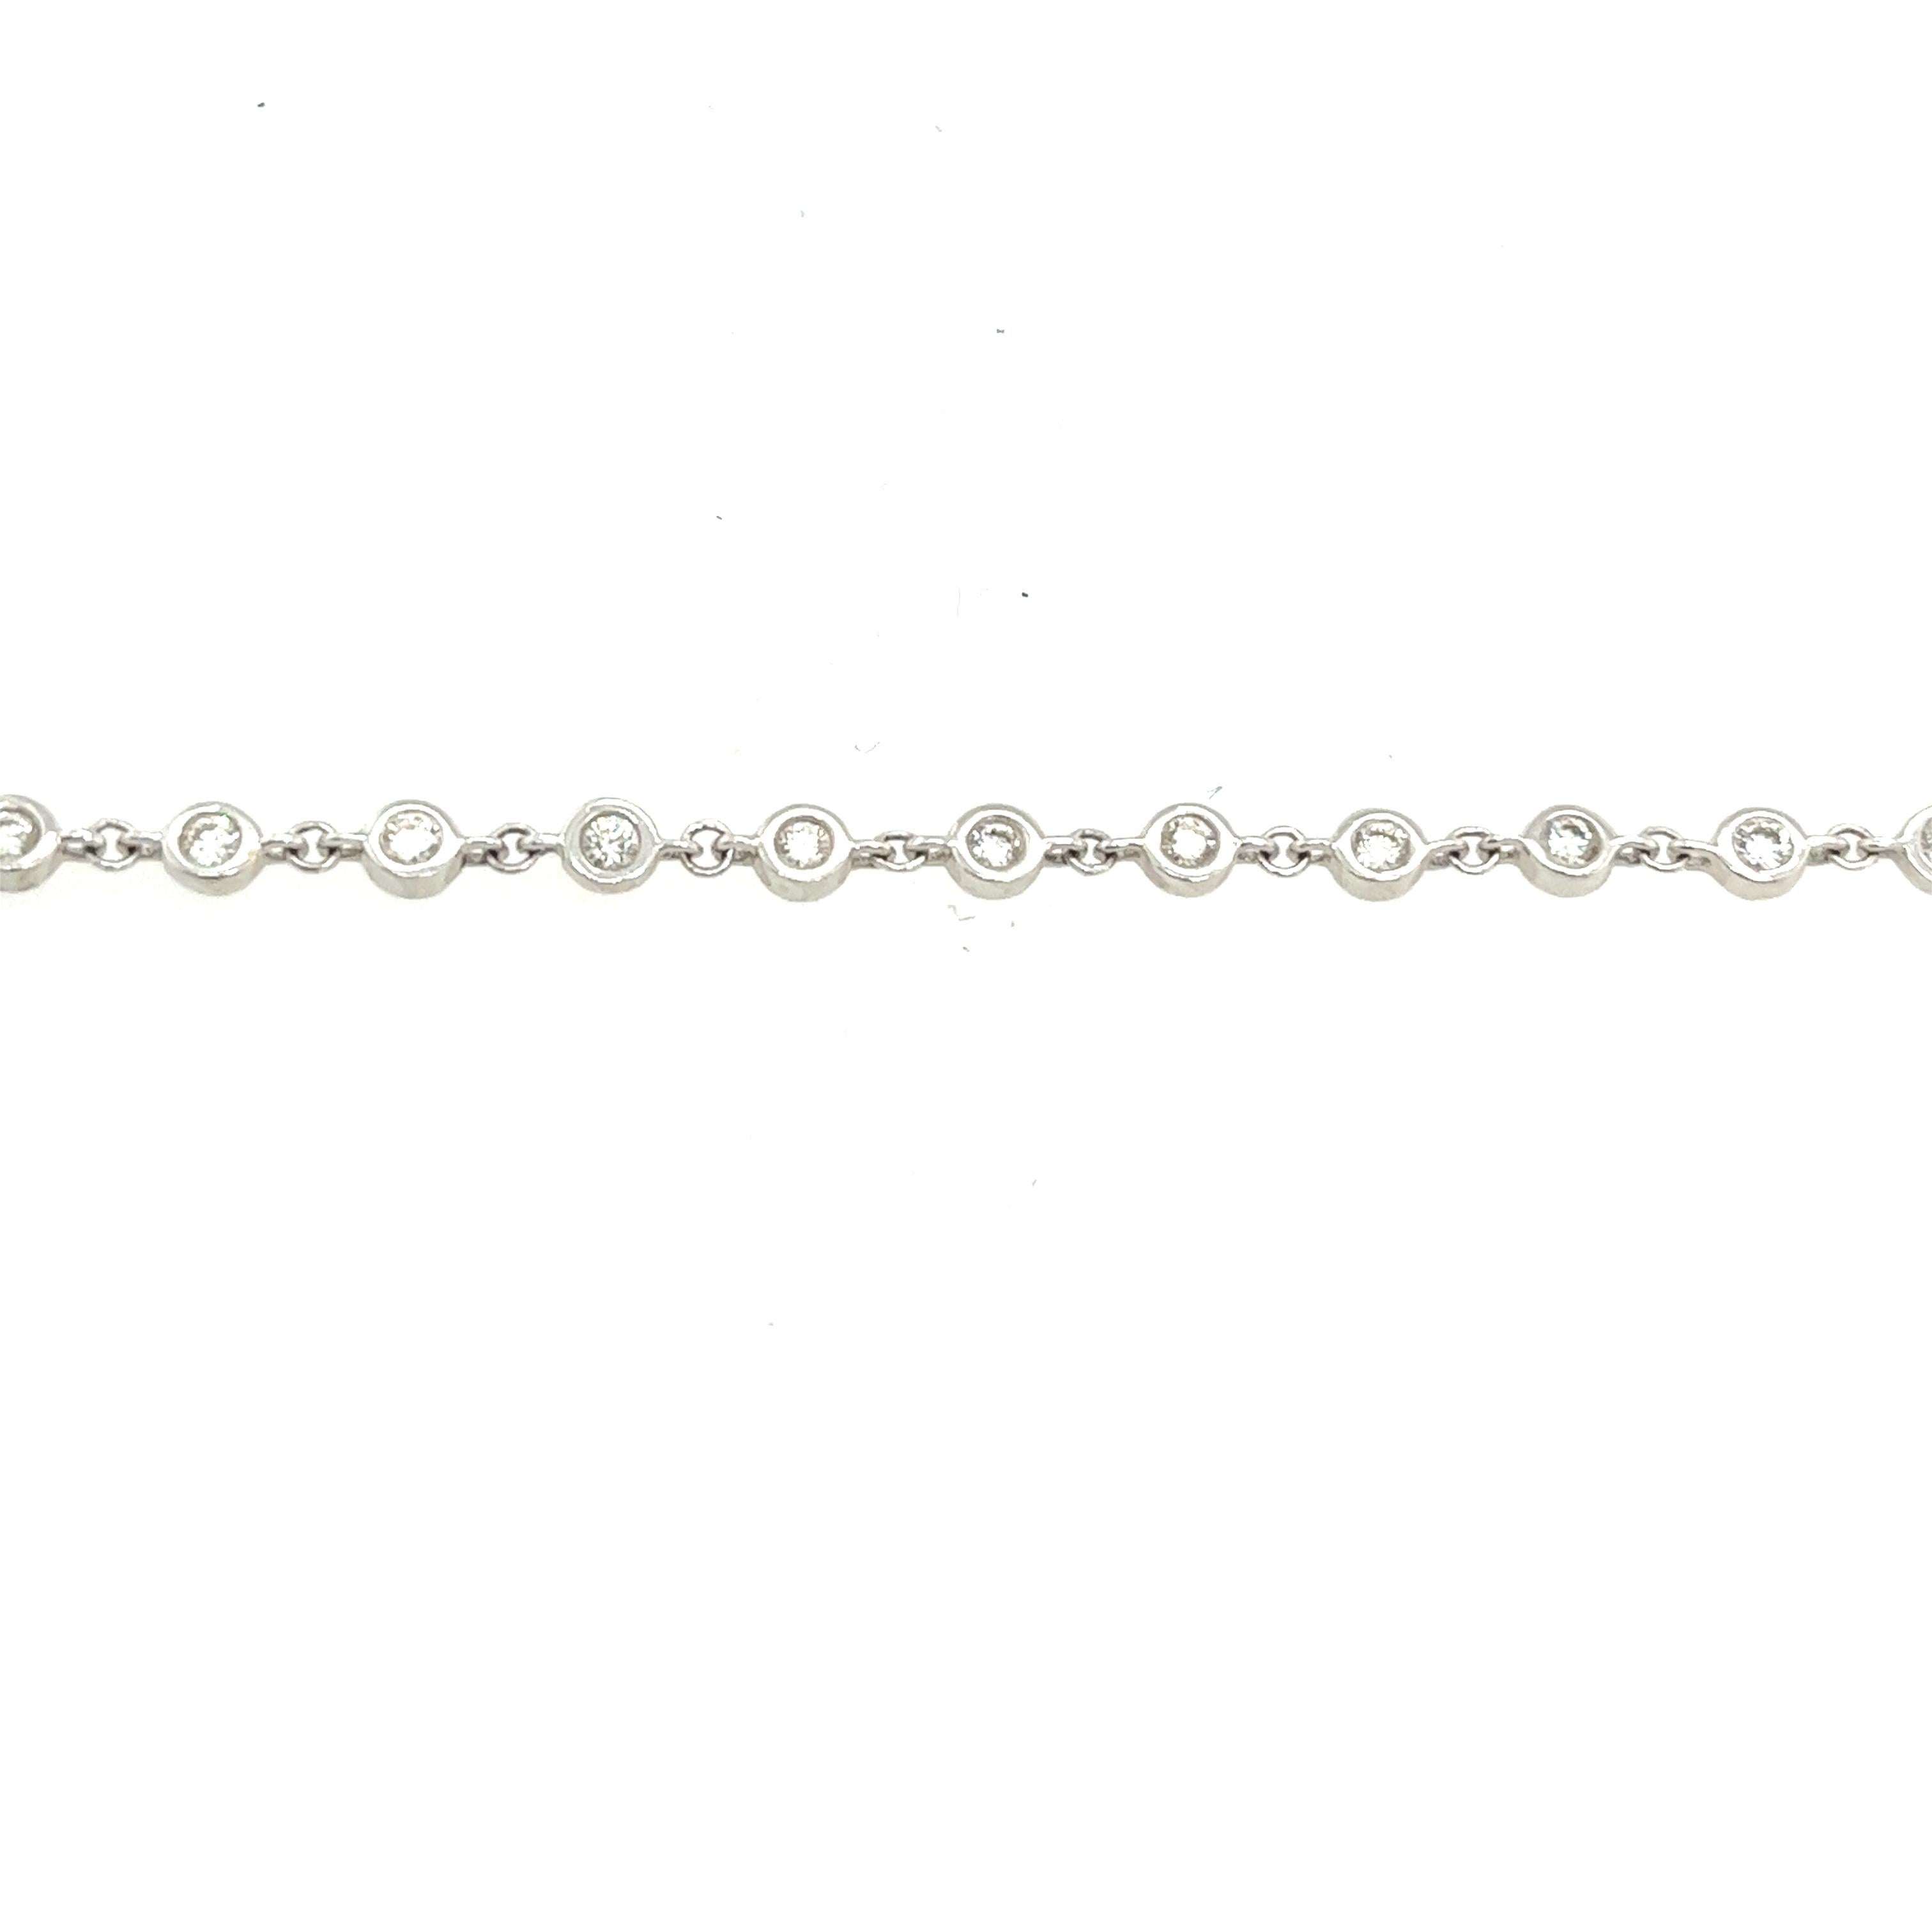 Bracelet pour femmes avec 29 diamants en or blanc 18 carats sertis sur le chaton                  

Ce bracelet en or blanc 18 carats pour femmes, serti de 29 diamants ronds de taille brillante, 0,80 carats, est réglable en longueur. Il est simple,